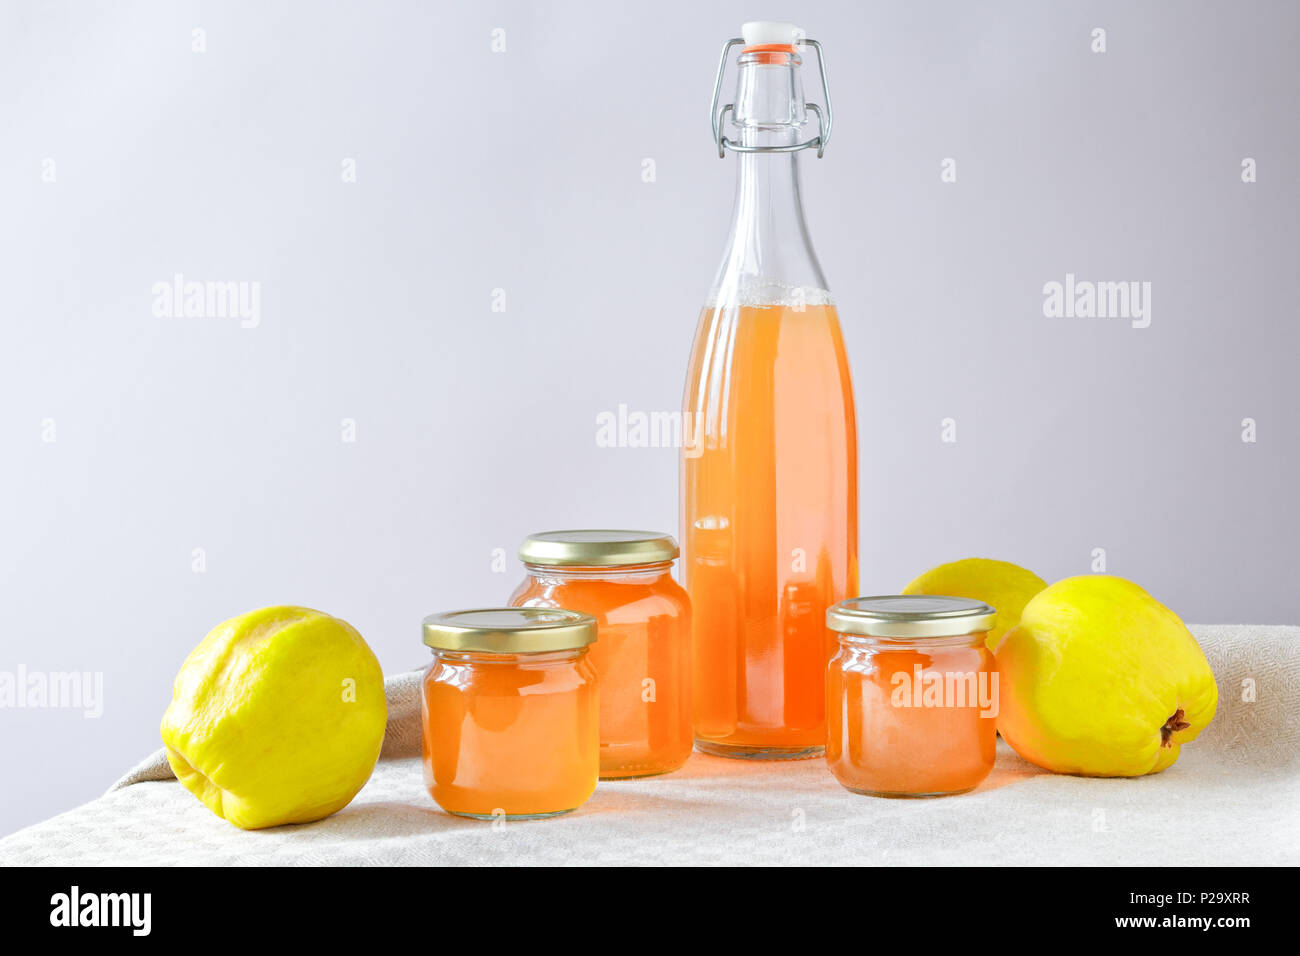 Hausgemachte Quitten Gelee und Saft in Flaschen und Gläsern mit Quitten auf Leinen Tischdecke vor neutralem Hintergrund, kopieren. Stockfoto